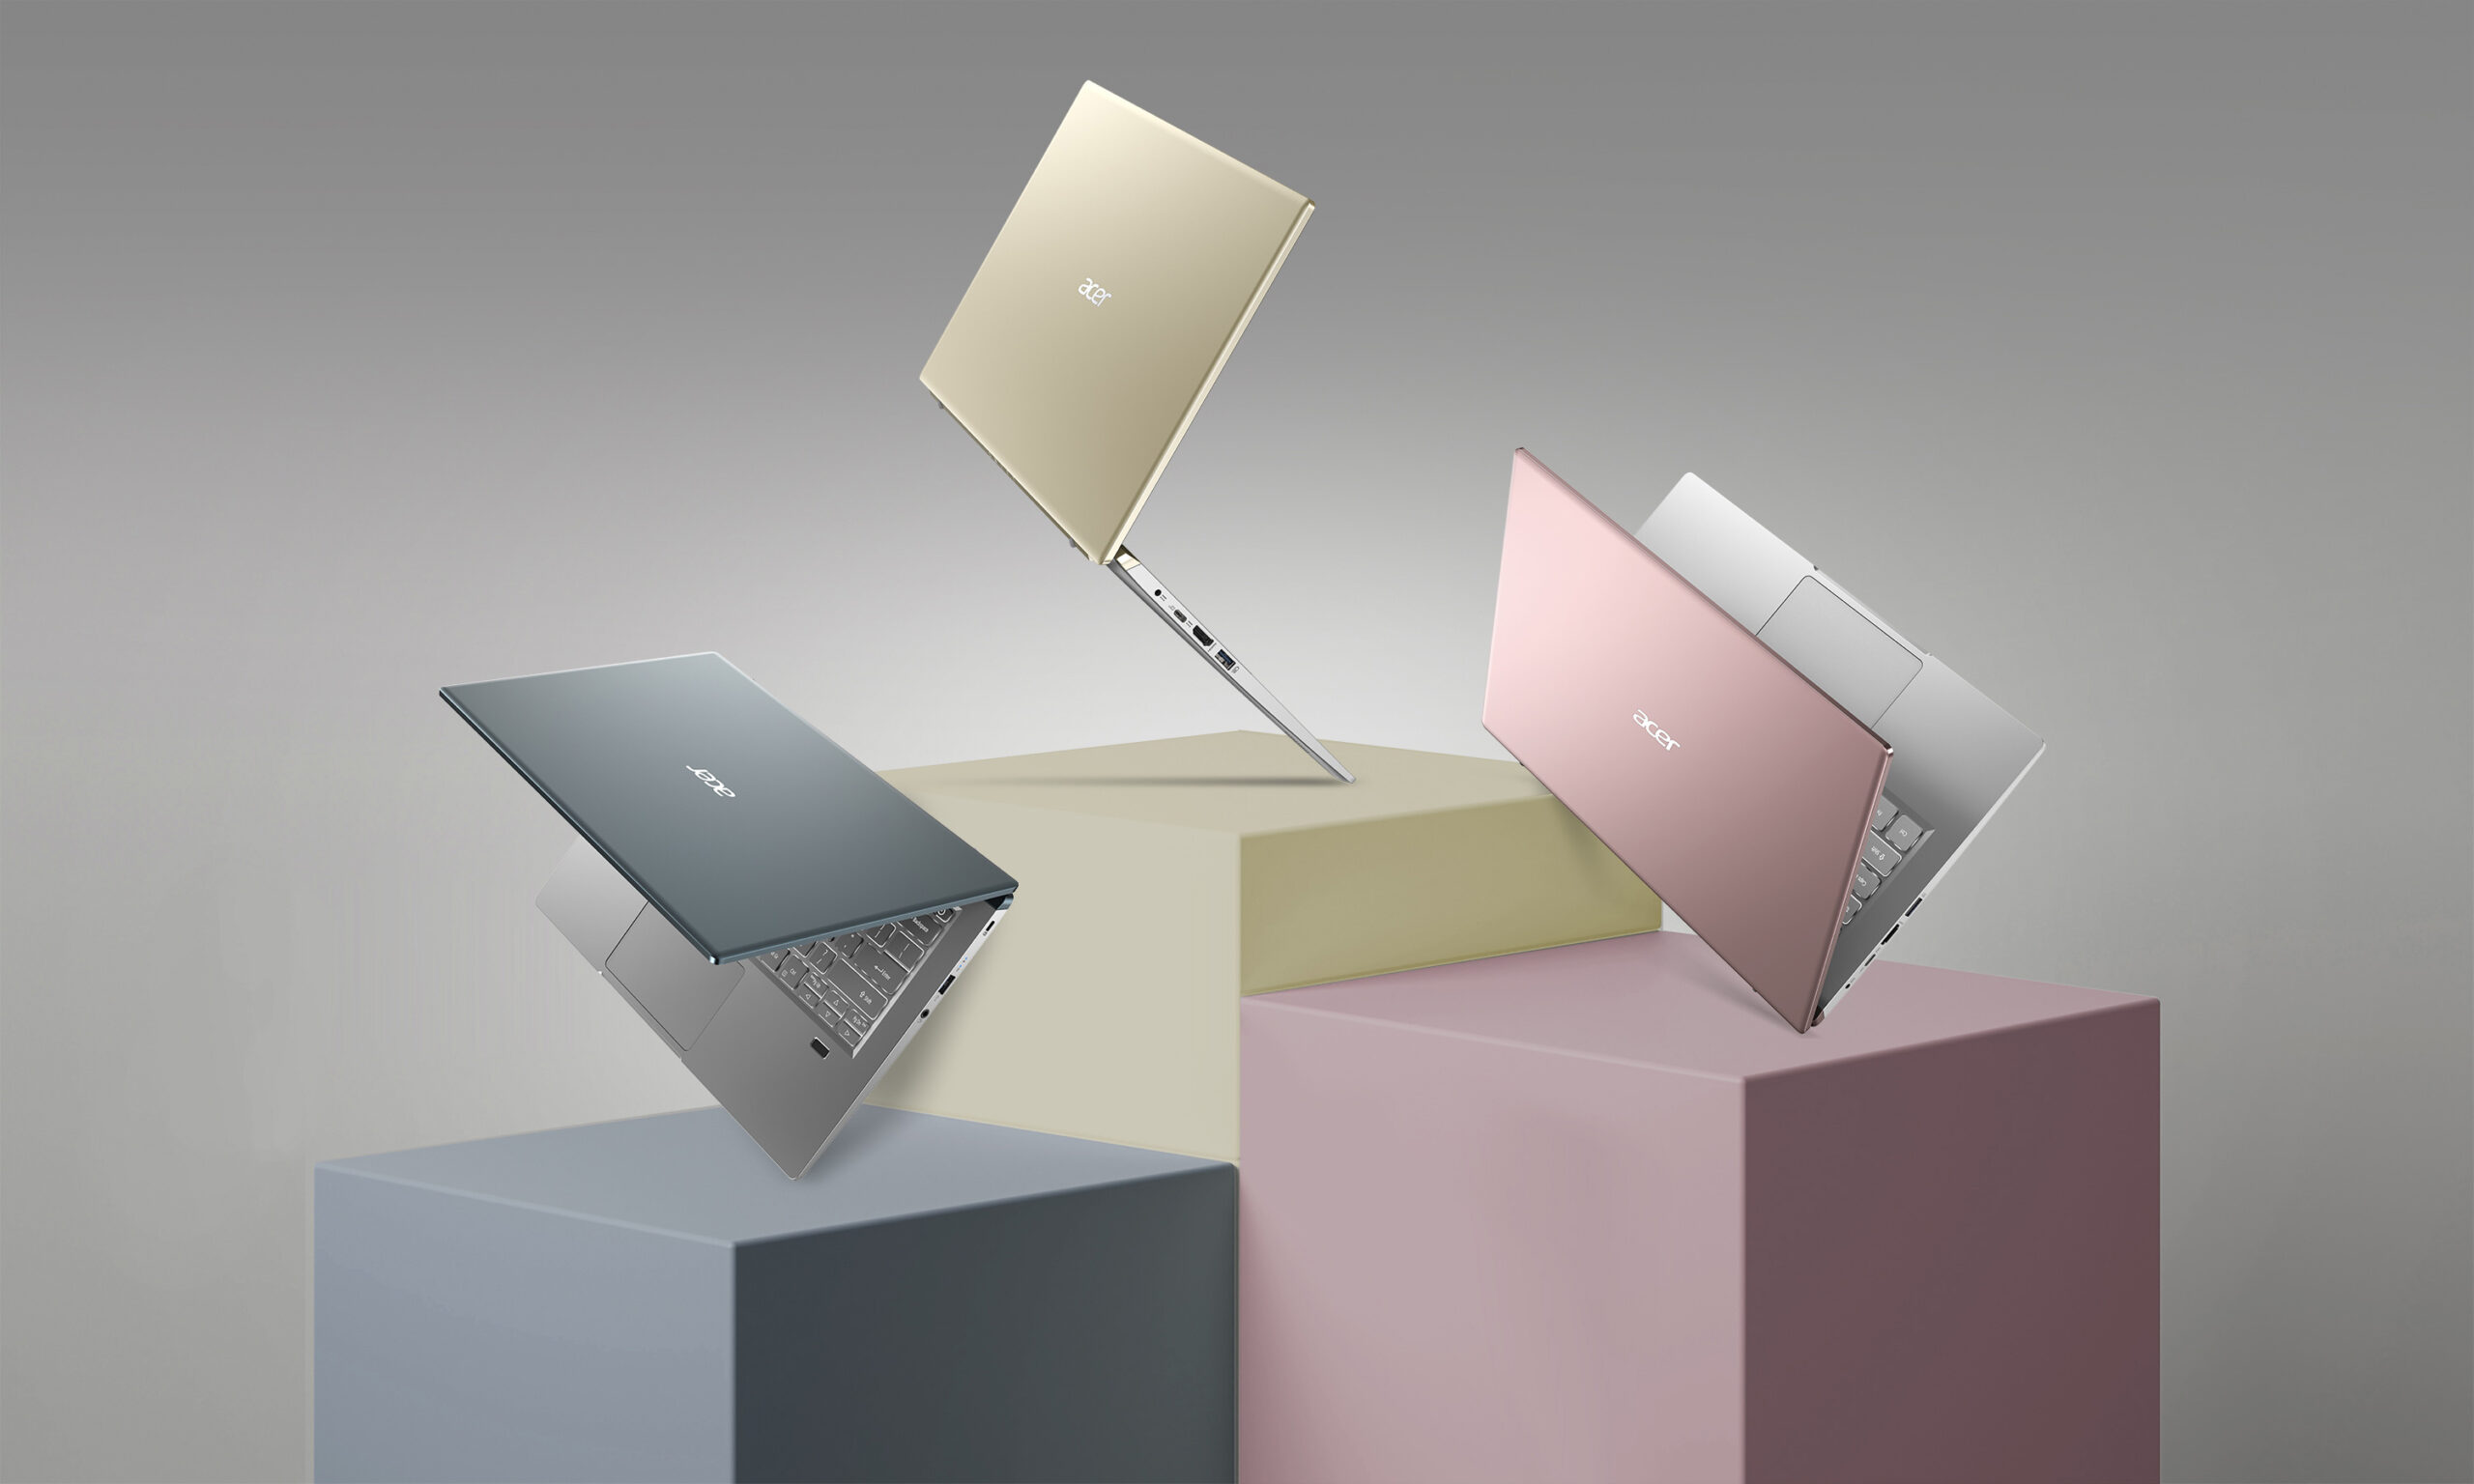 Acer presentó la Swift X, el nuevo miembro de su popular línea de notebooks Swift. Diseñada para llevar el diseño del PC ultraportátil